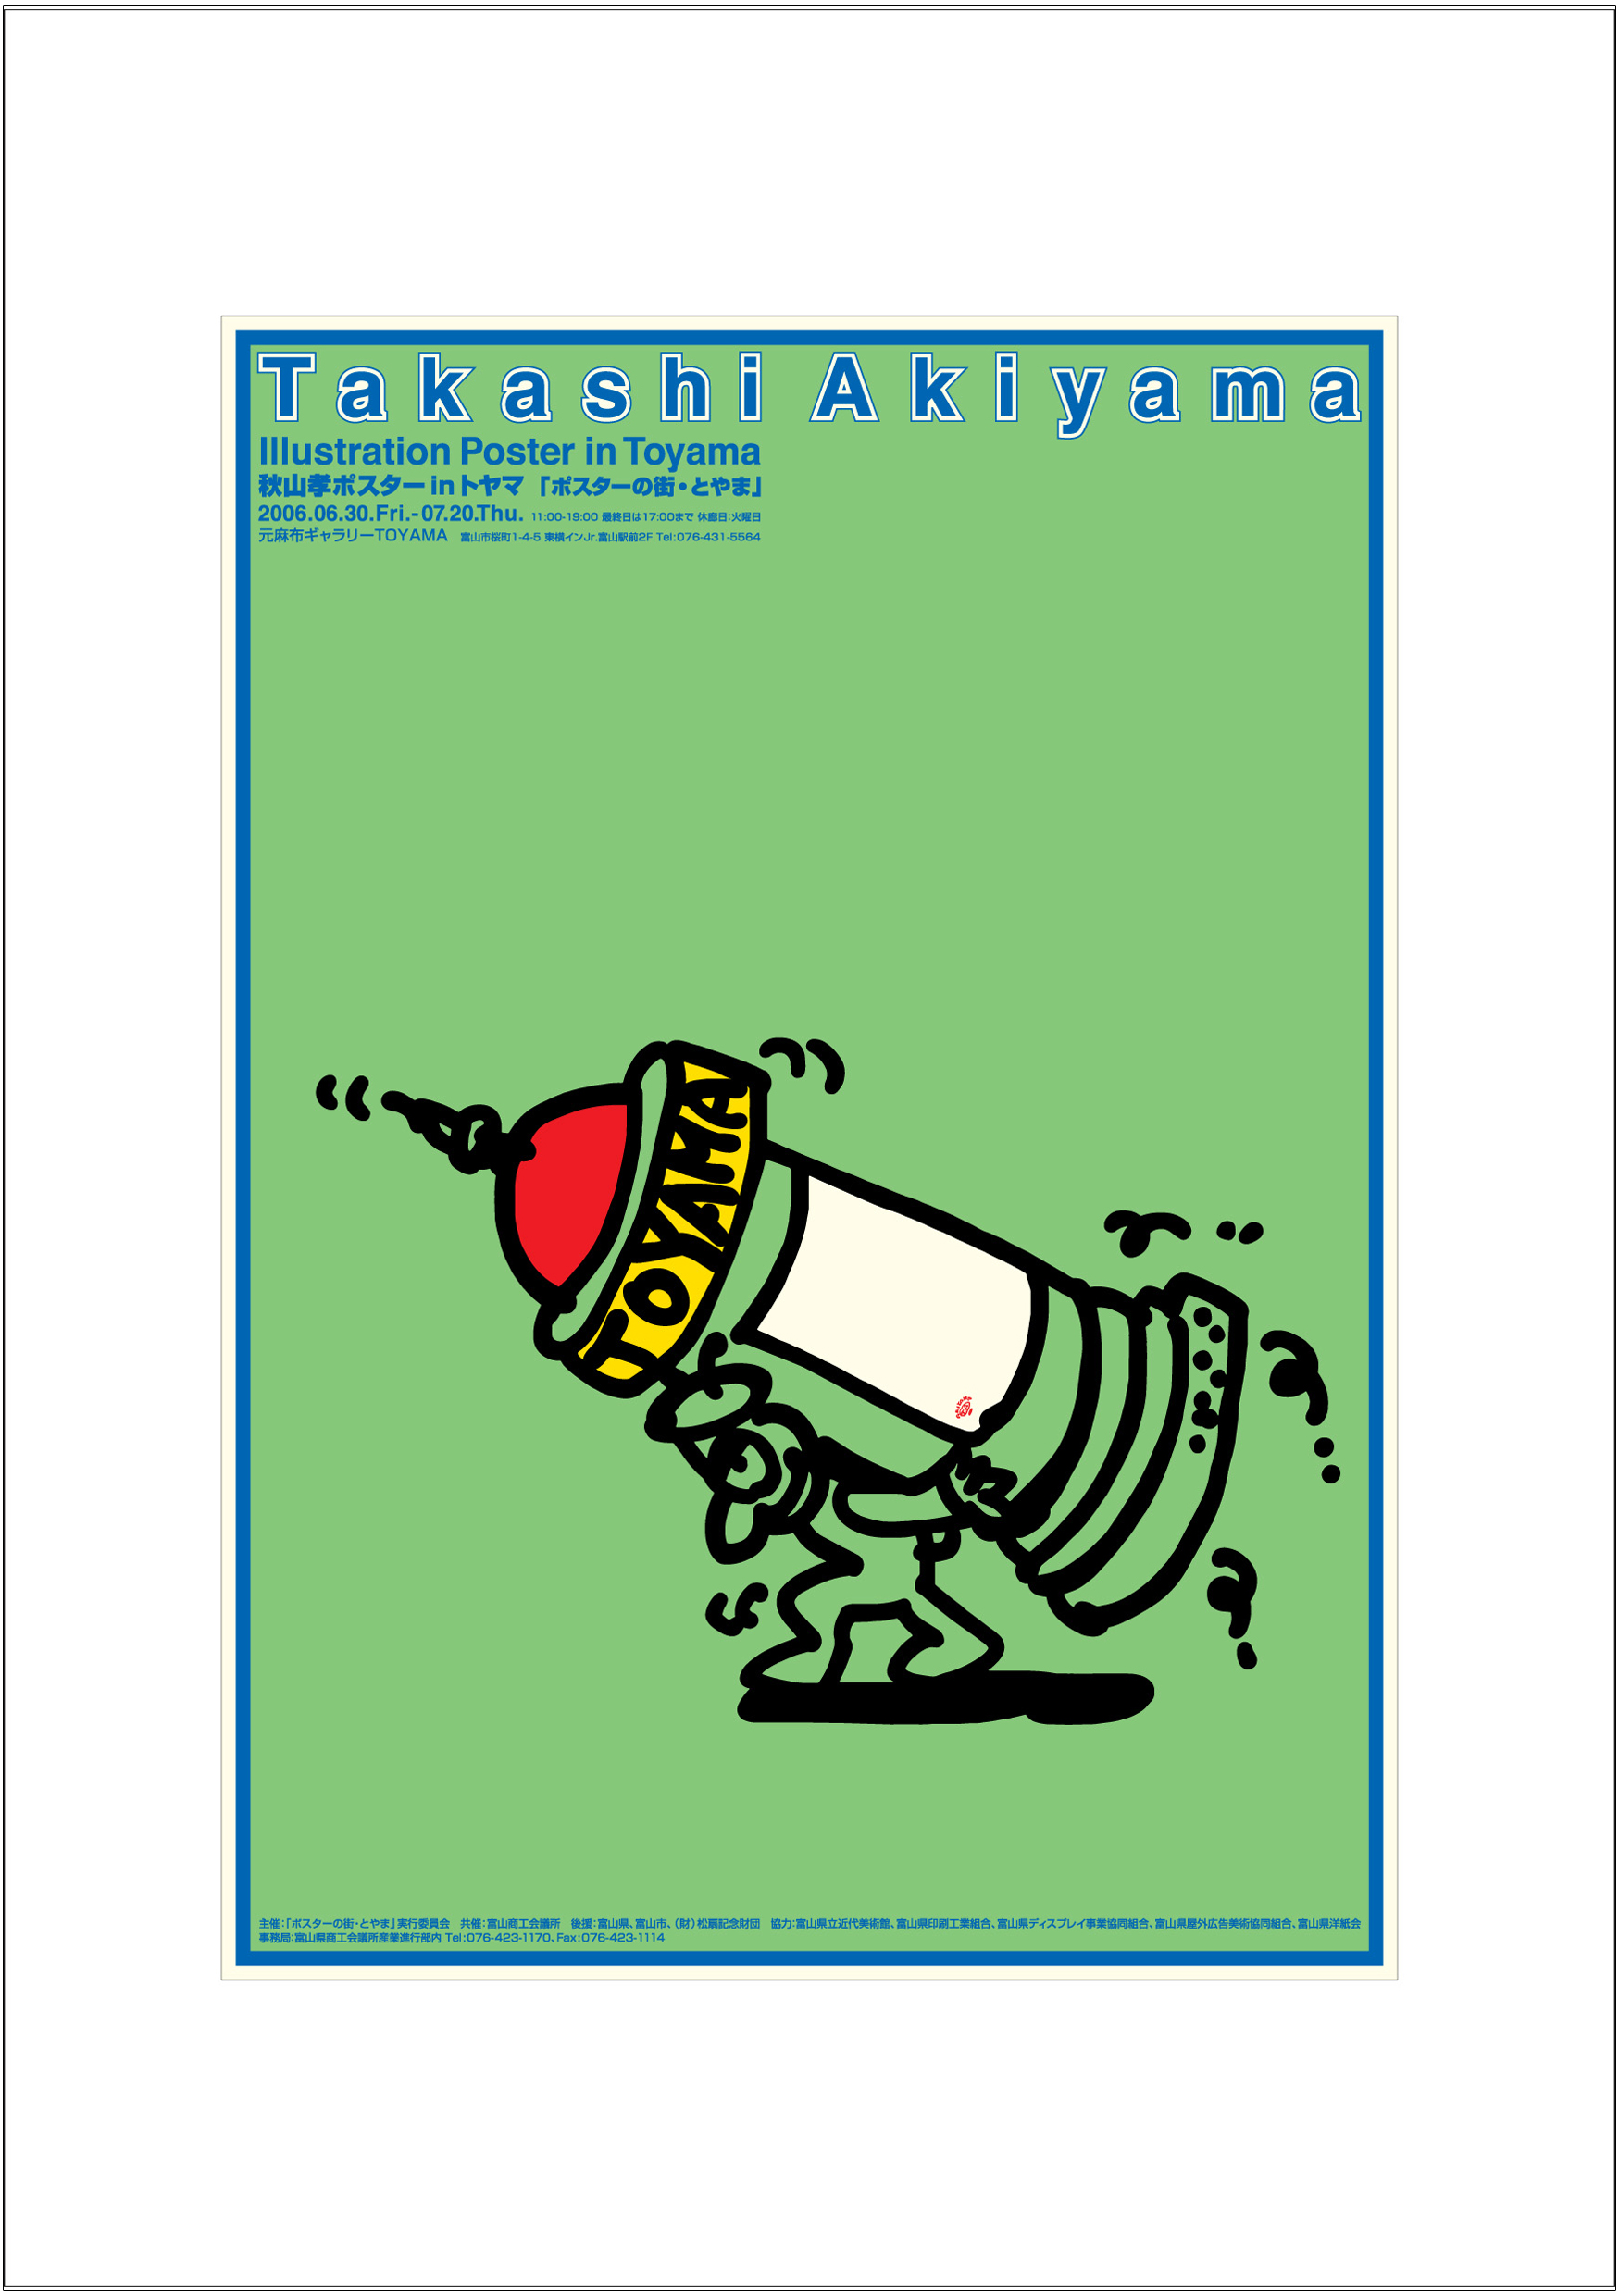 ポスターアーティスト秋山孝が2006年に制作したアートカード「アートカード ポスター 2006 03」